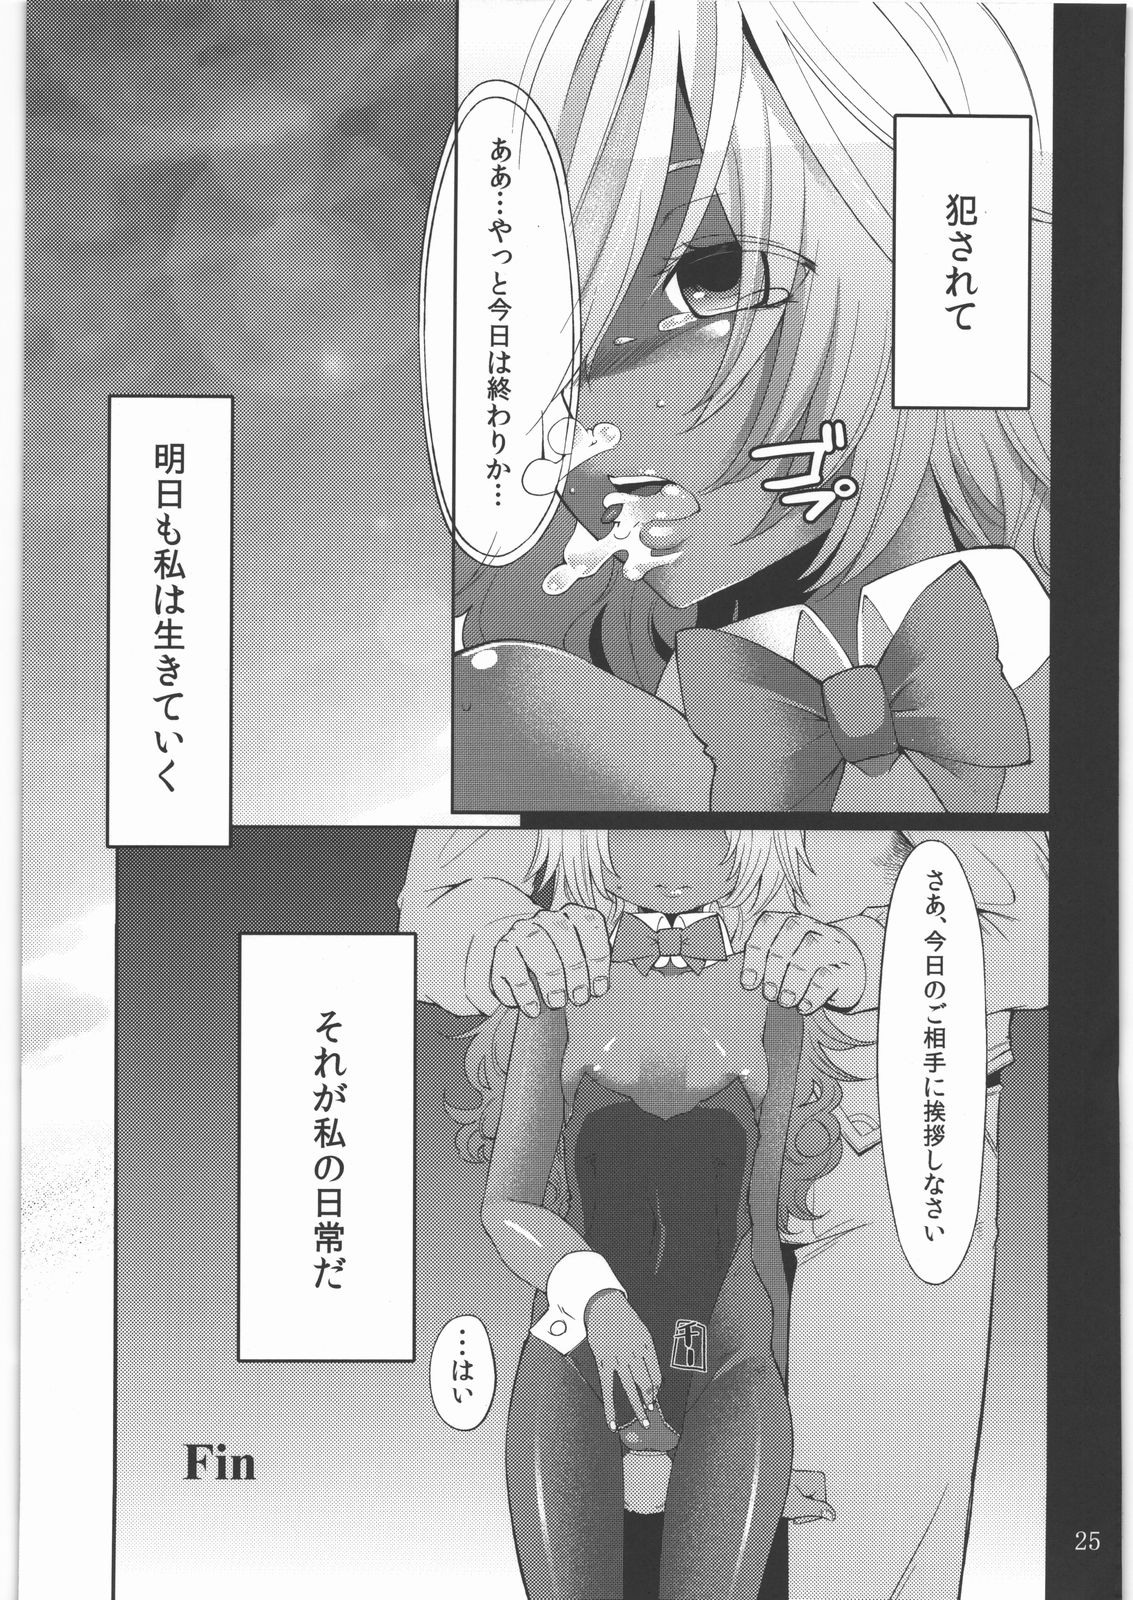 (SC56) [Shouwa Saishuu Sensen (Hanauna)] Shoujo no Nichijou / Dorei to Shokushu (Dragon Quest III) (サンクリ56) [昭和最終戦線 (はなうな)] 少女ノ日常 奴隷と触手 (ドラゴンクエスト3)